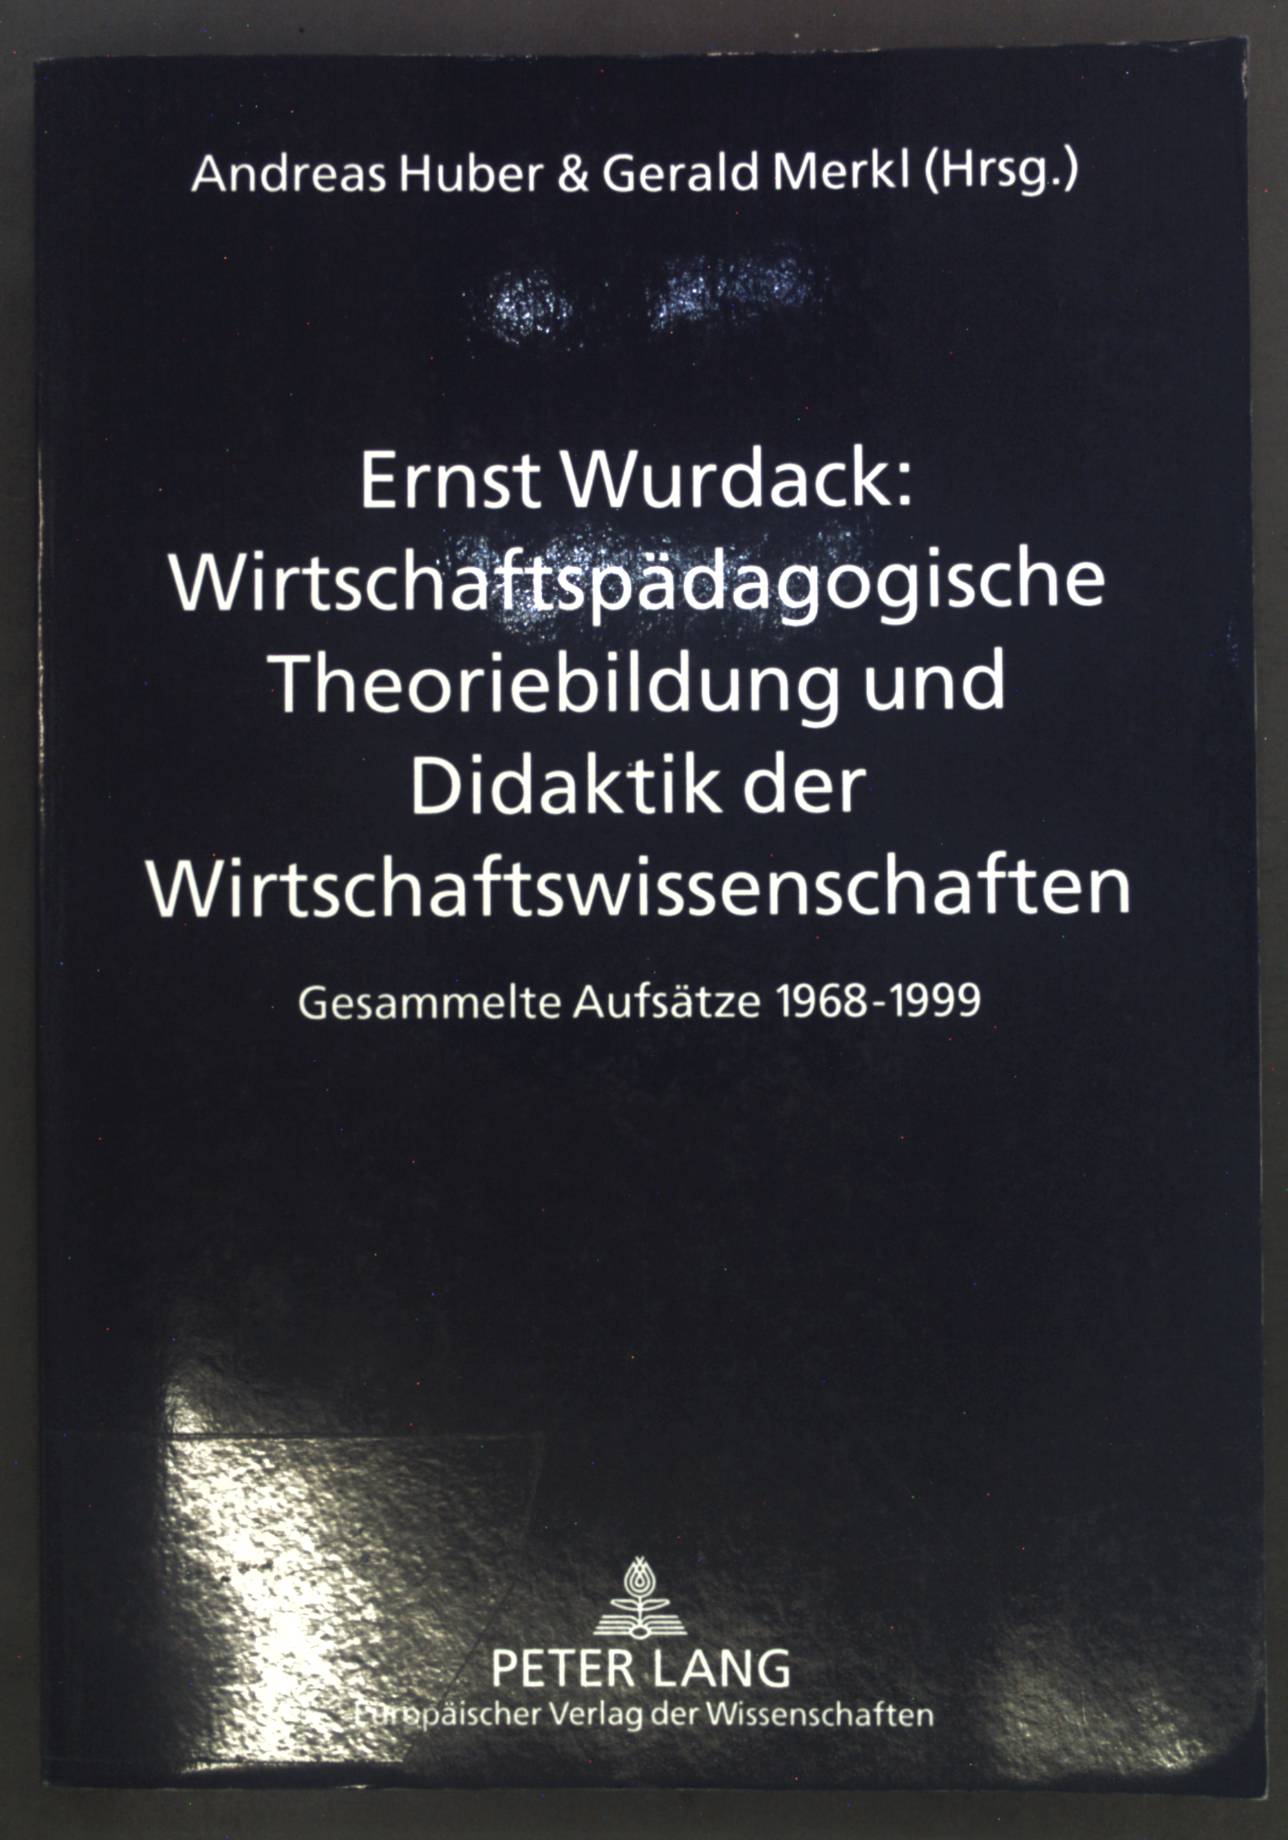 Wirtschaftspädagogische Theoriebildung und Didaktik der Wirtschaftswissenschaften : gesammelte Aufsätze 1968 - 1999. - Wurdack, Ernst, Andreas Huber und Gerald Merkl